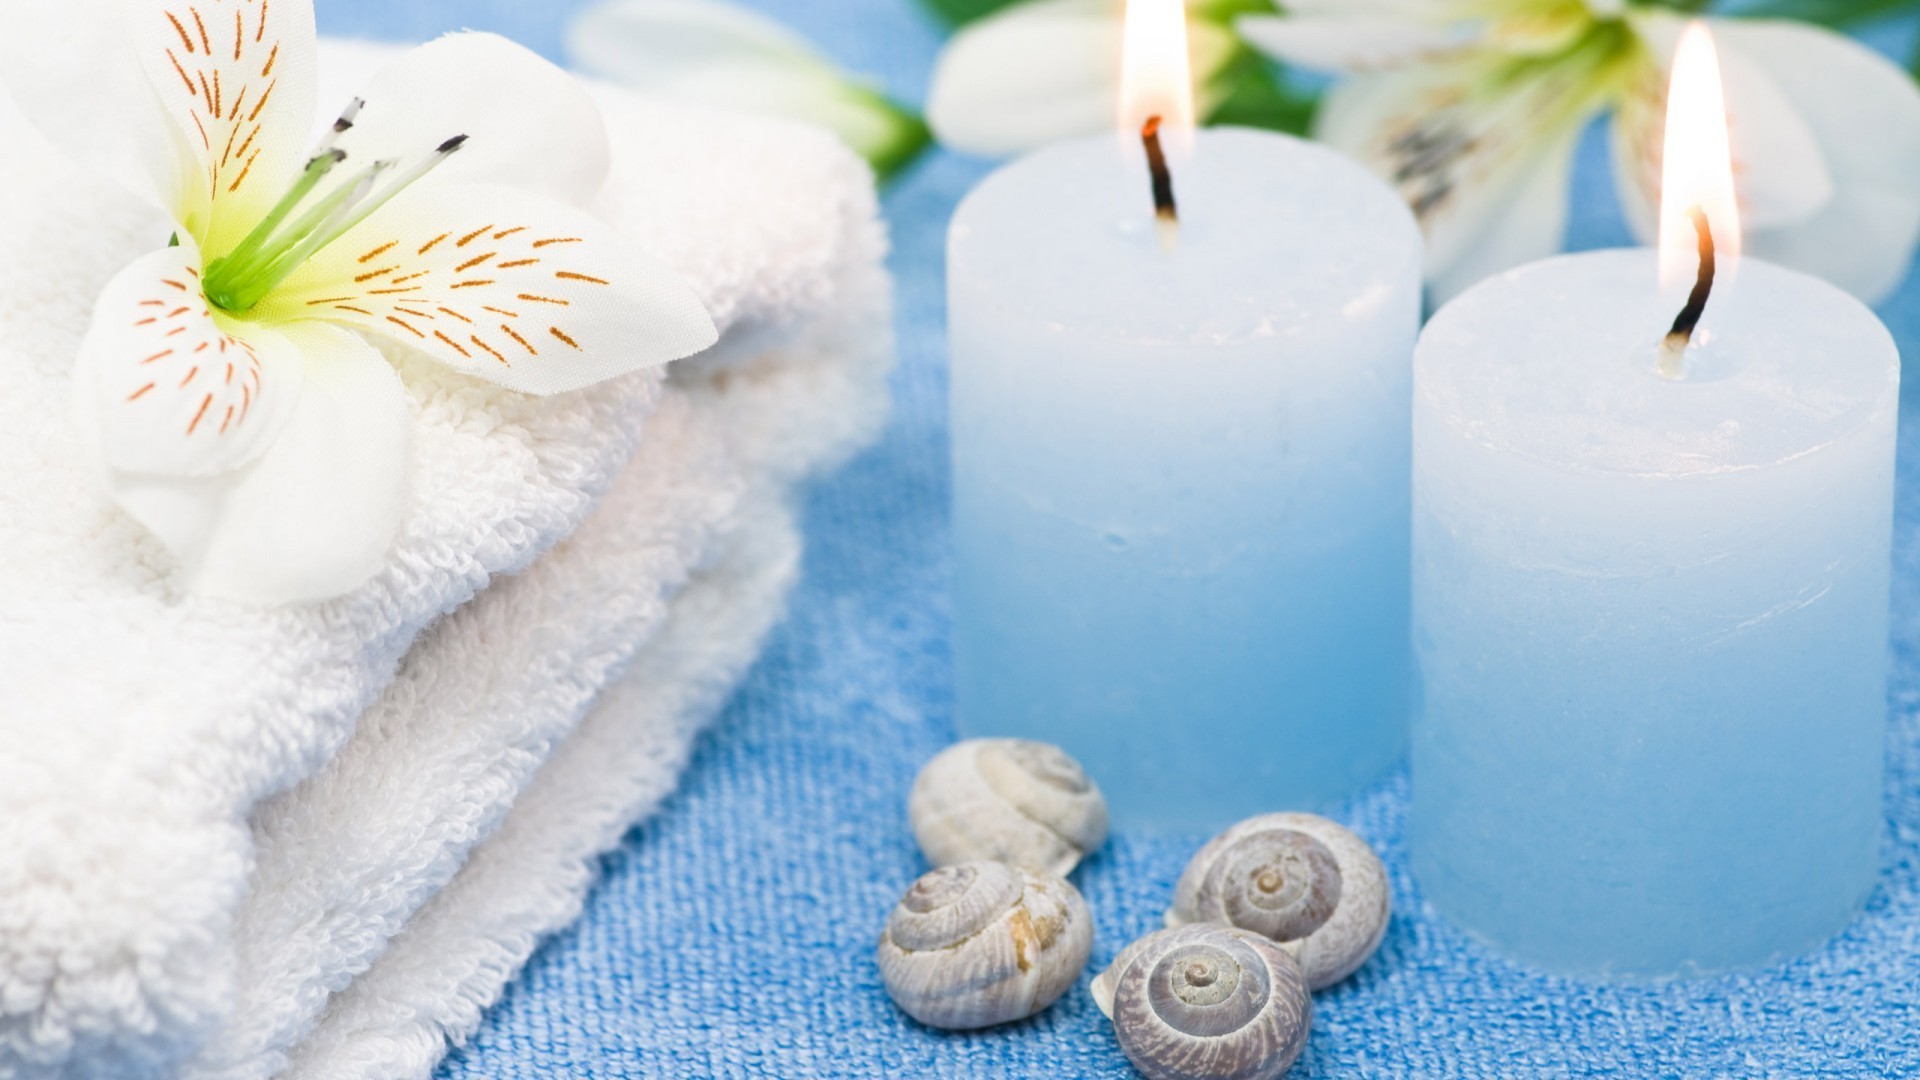 контрасты ванна релаксация лечение ароматерапия терапия гигиена дзен свеча полотенце чистота гармония массаж ванная комната мыло чистые природа цветок уход хладнокровие